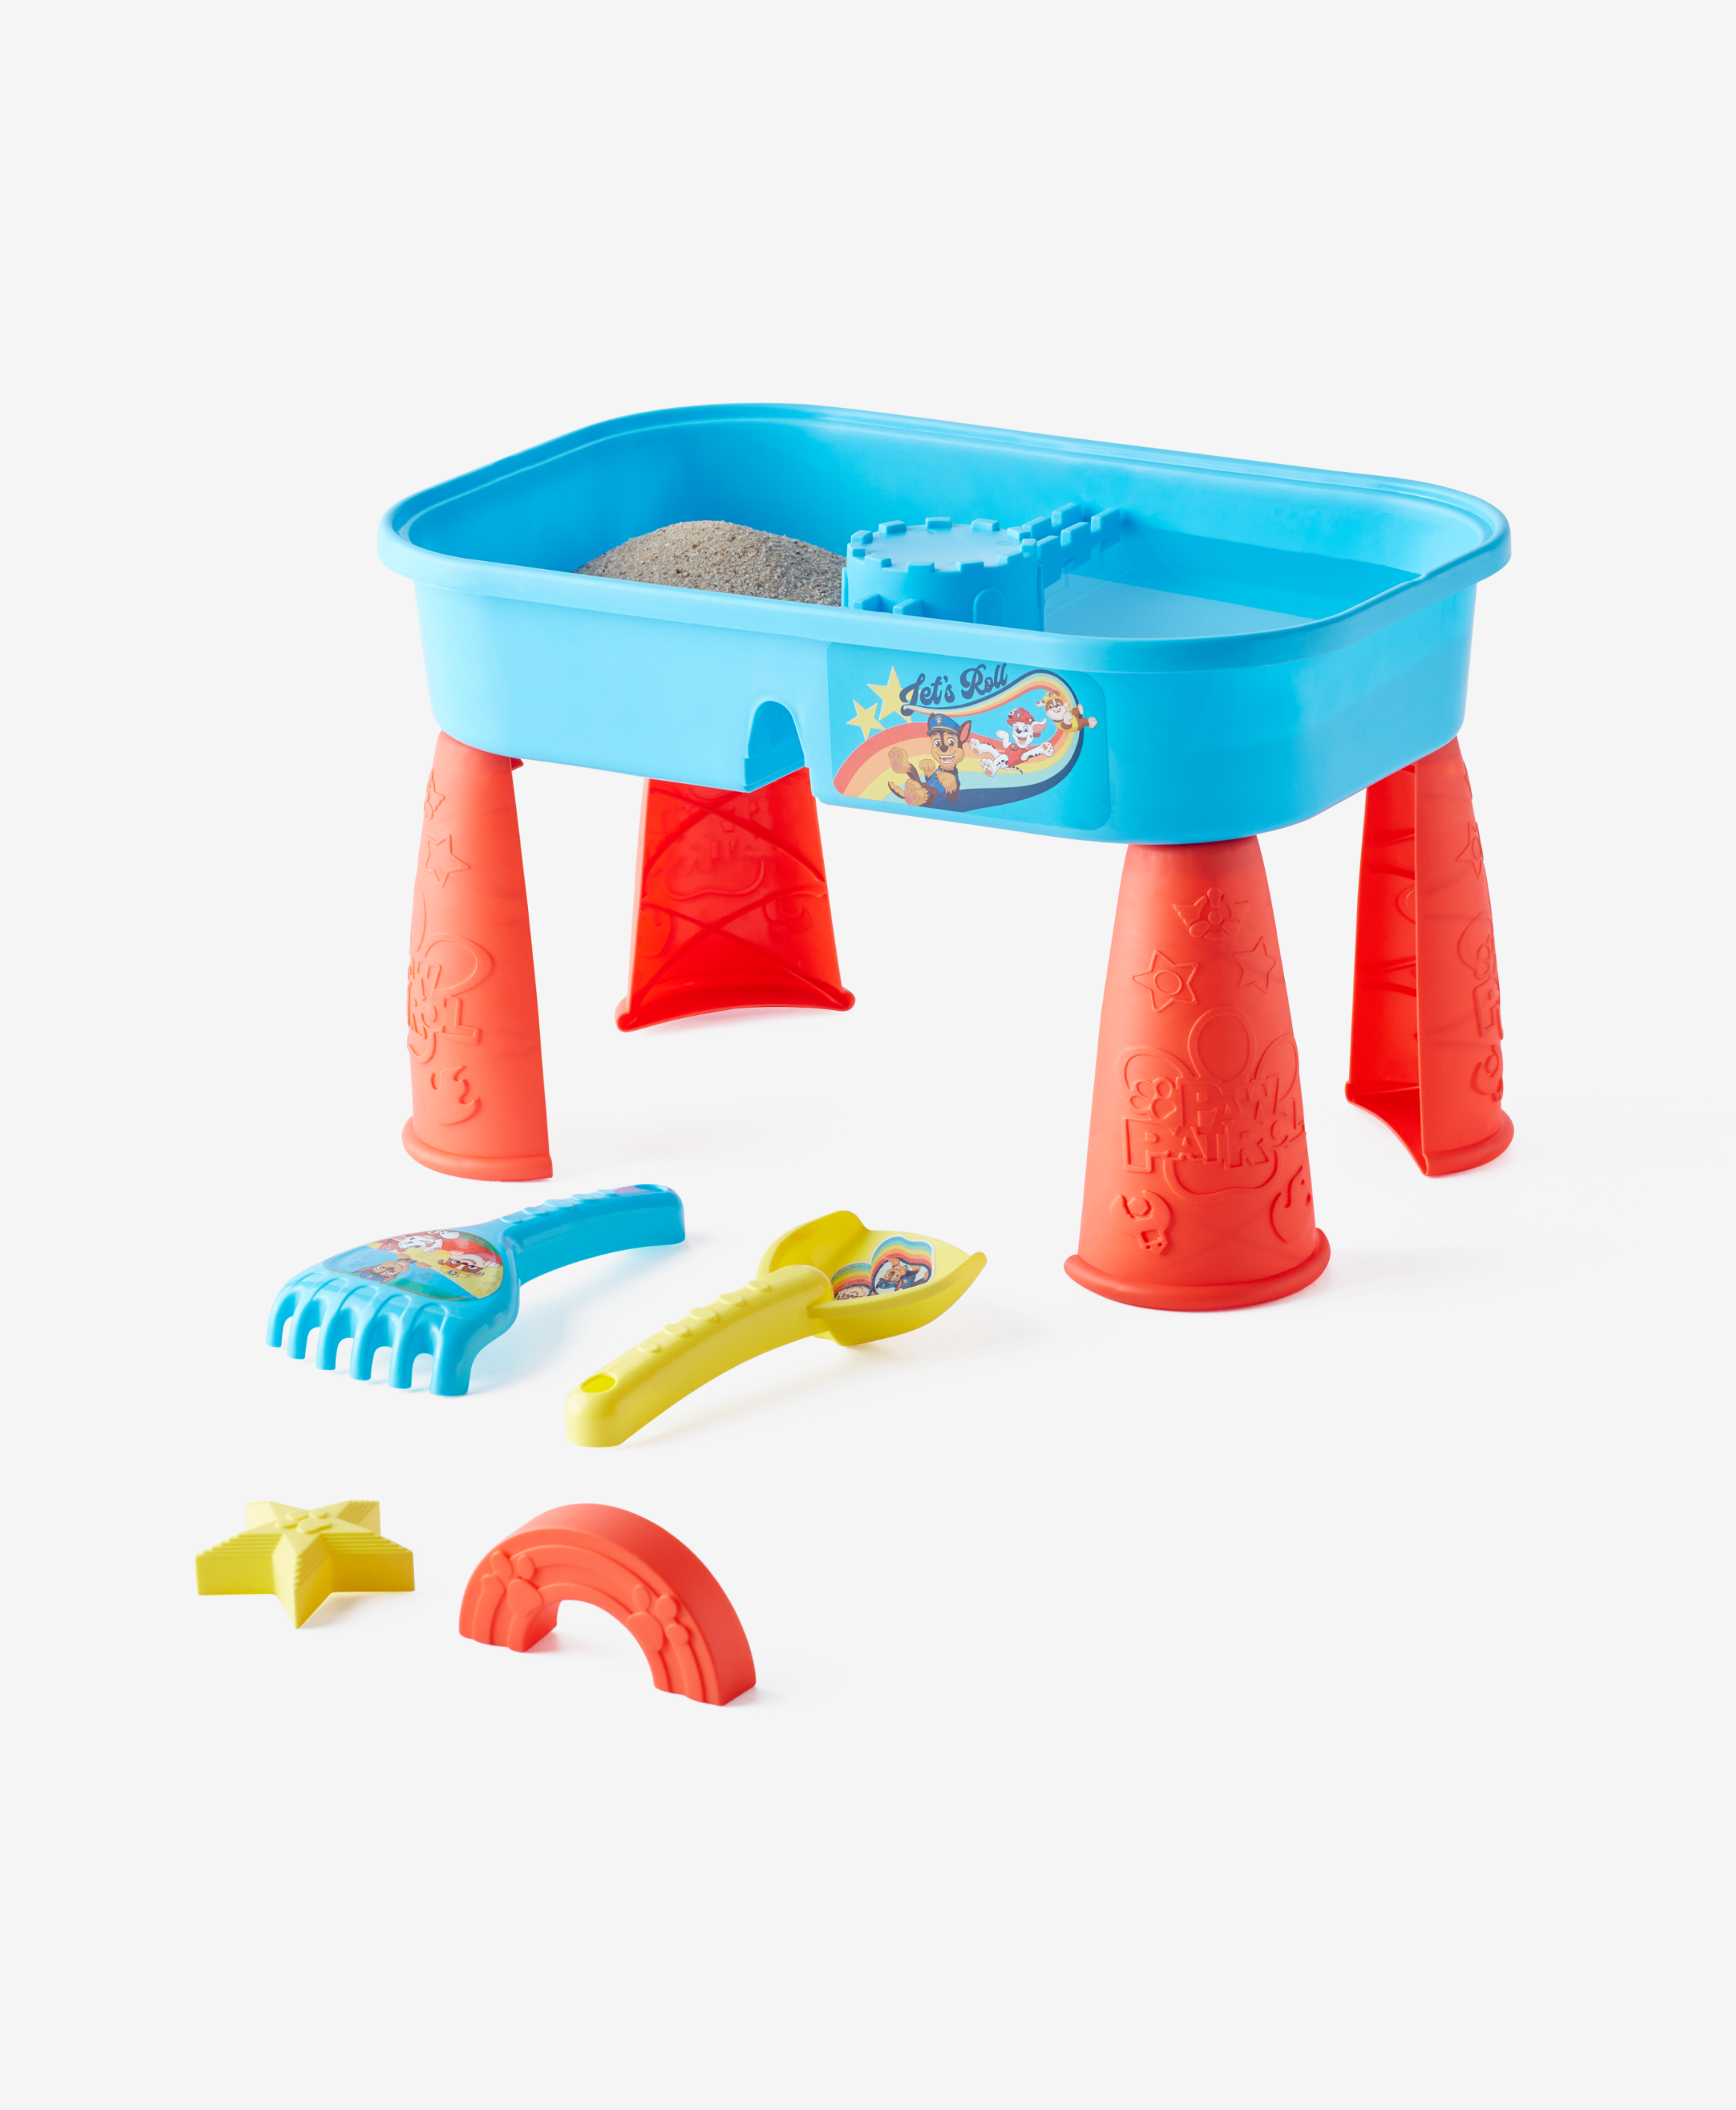 Paw Patrol Spielzeugset für Sand und Wasser, blau, rot